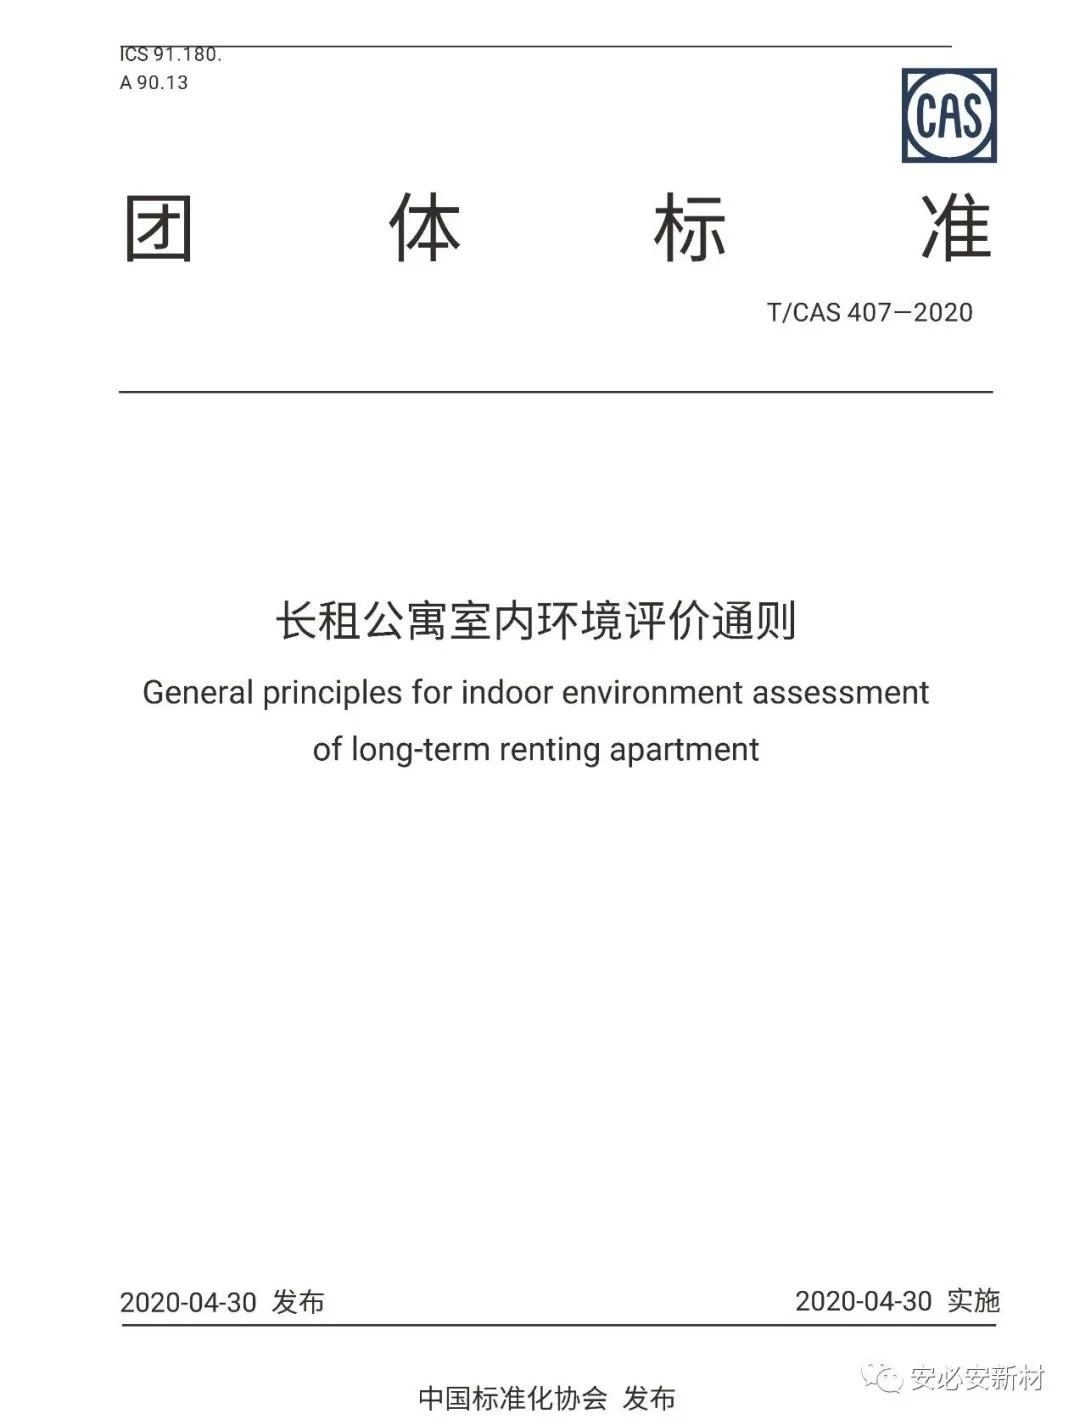 安必安参编的《长租公寓室内环境评价通则》已正式发布！